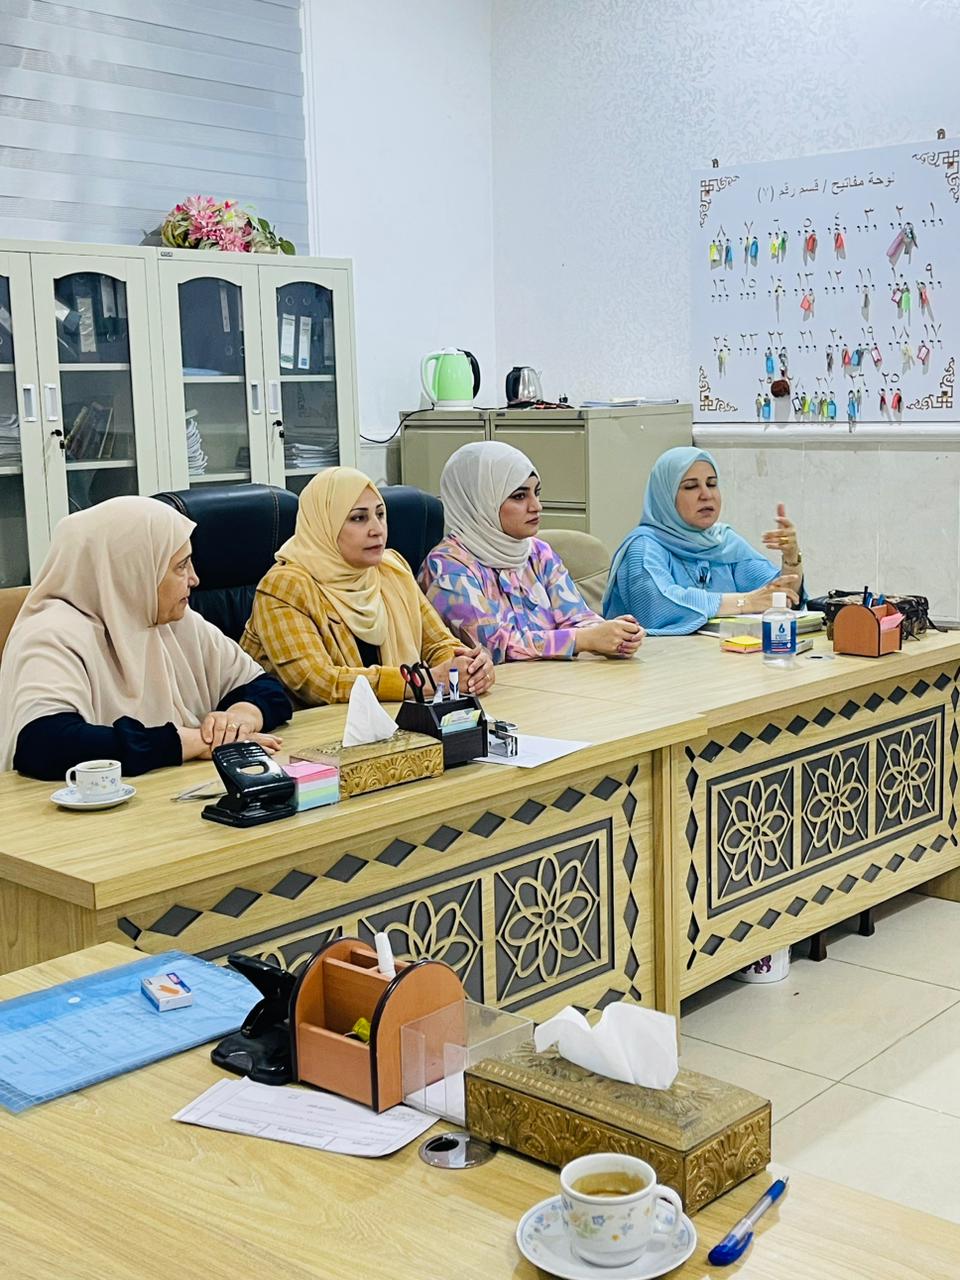 مسؤولة وحدة شؤون المرأة مع لجنة الاشراف على الاقسام الداخلية في كلية الطب تزور المجموعة الطبية